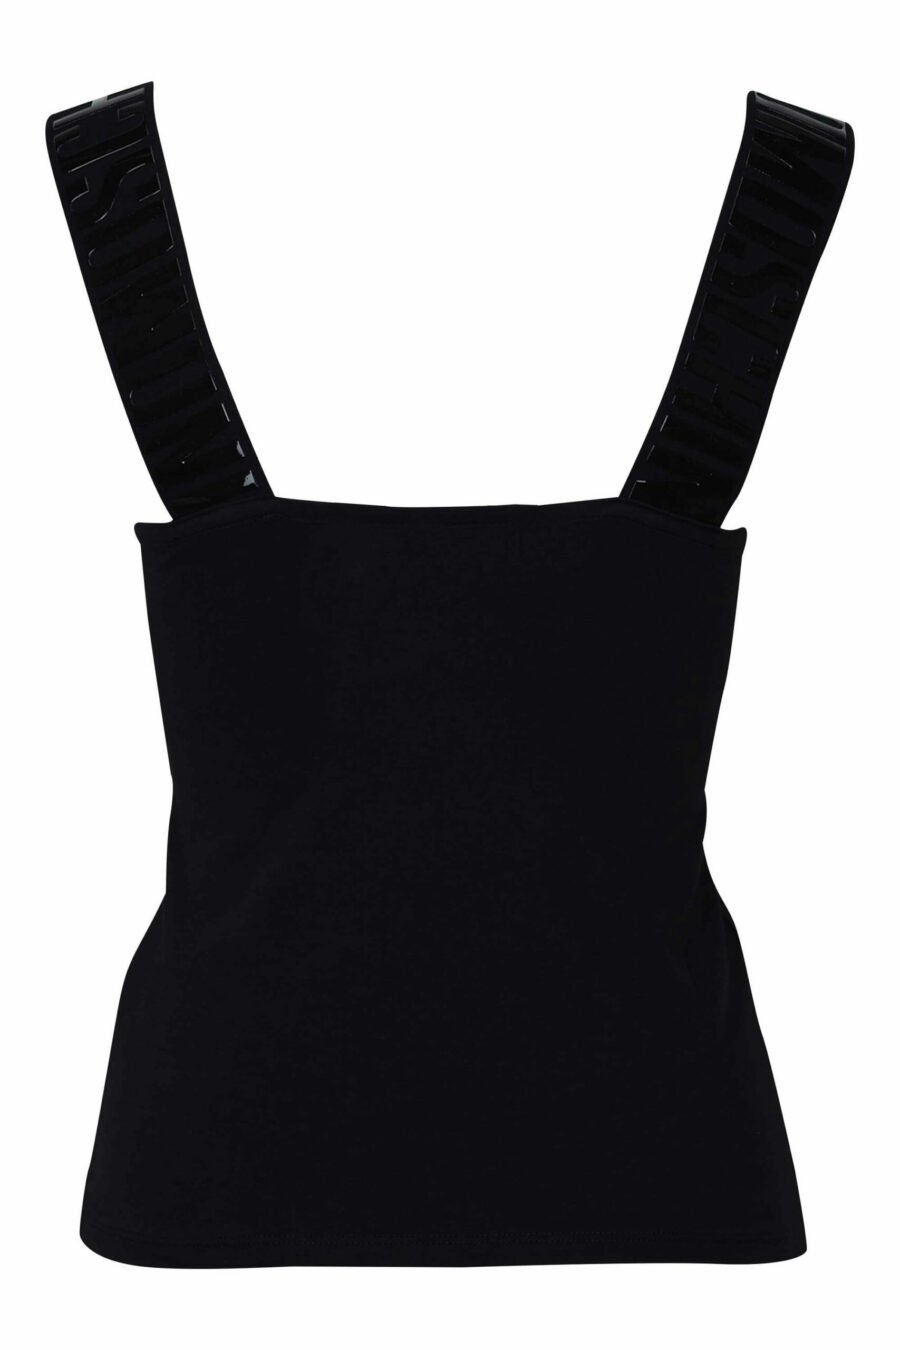 T-shirt noir sans manches avec logo rayé monochrome - 889316615043 1 1 échelle